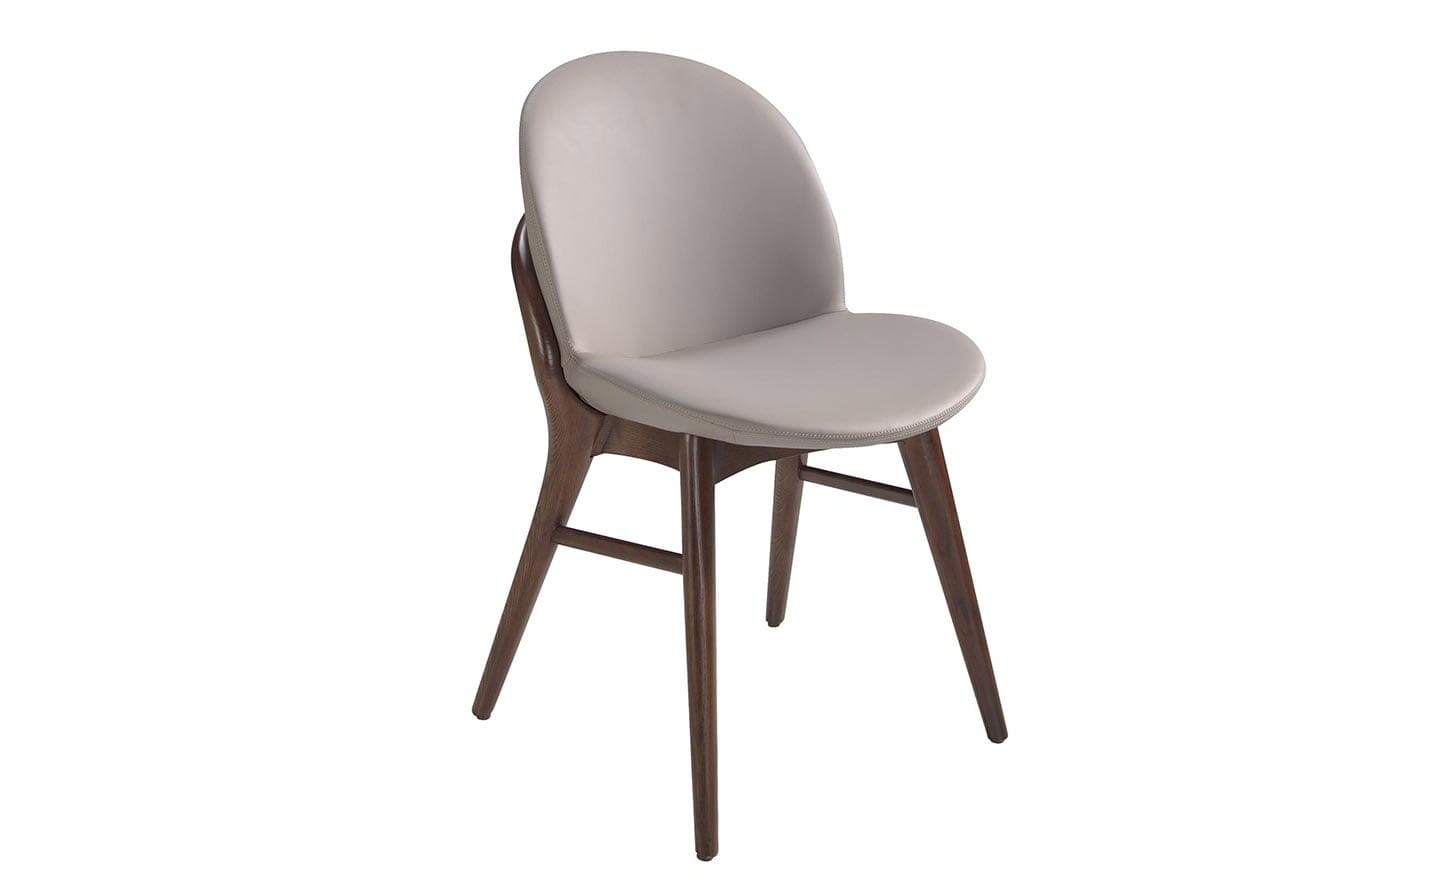 Cadeira Munique 4107 - Cadeira de Madeira Estofada para Sala de Jantar | Moveistore